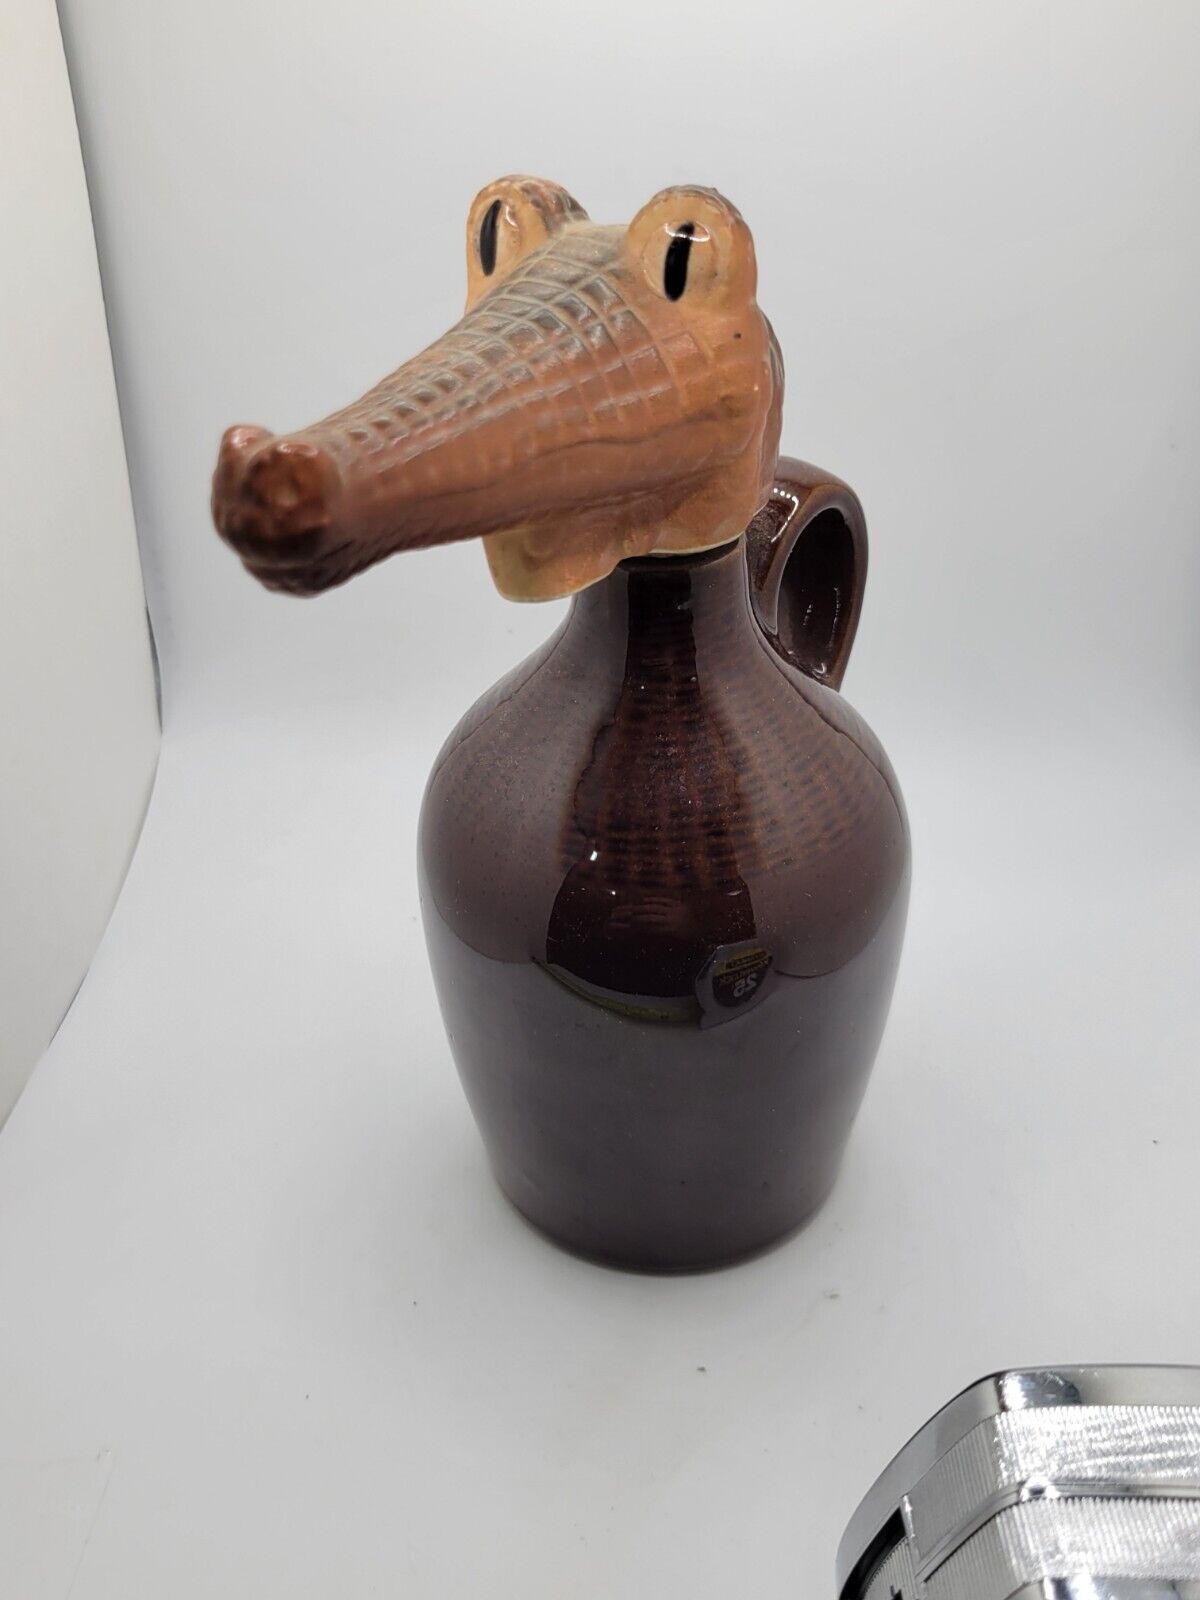 Vintage Japanese Art Deco Jug Alligator Stopper Great Gift